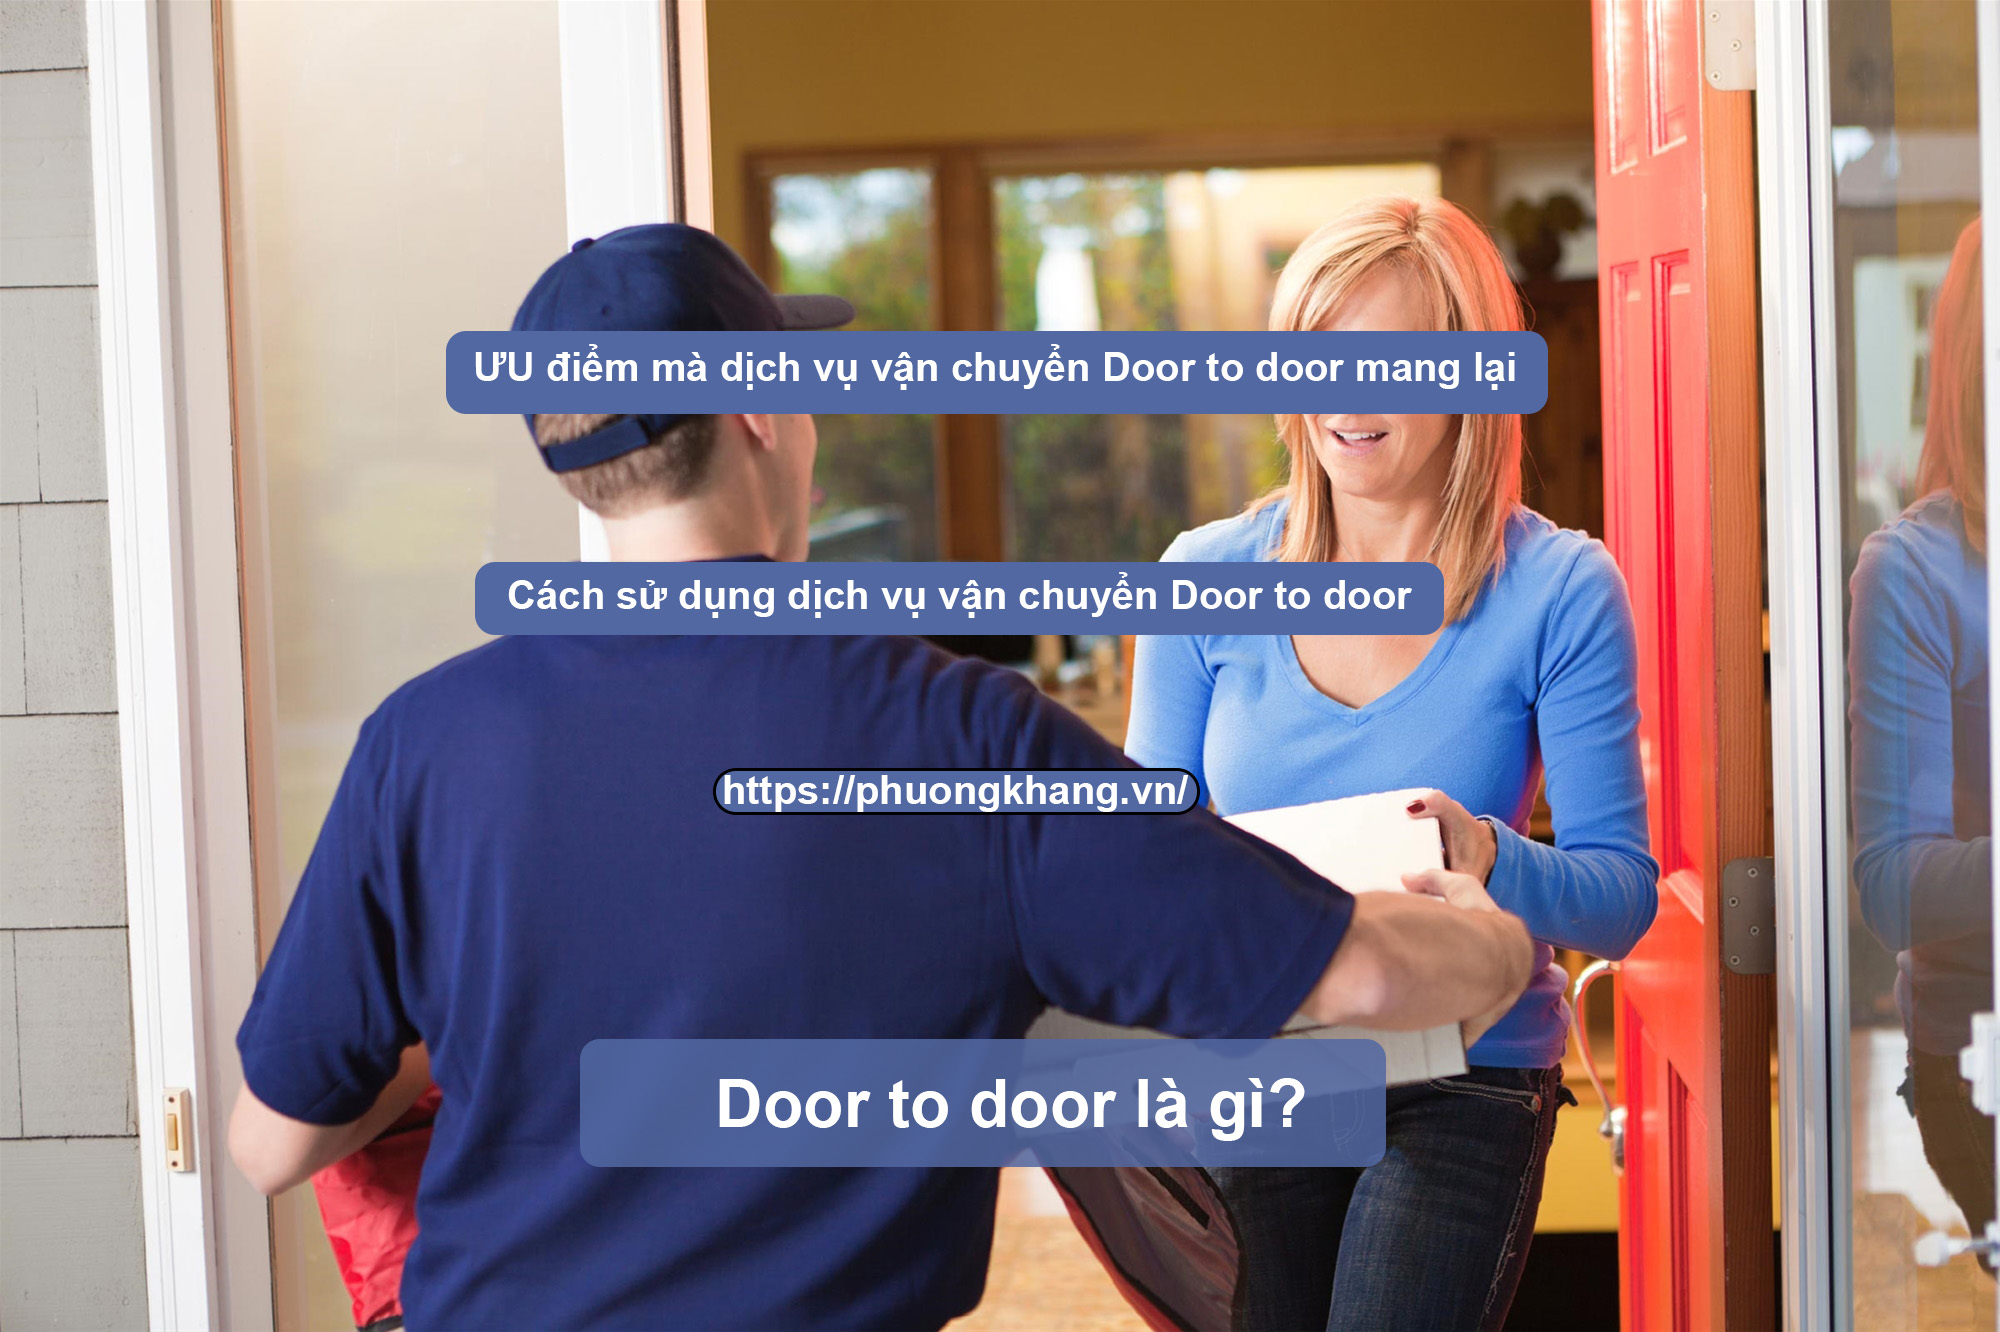 dịch vụ Door to door là gì